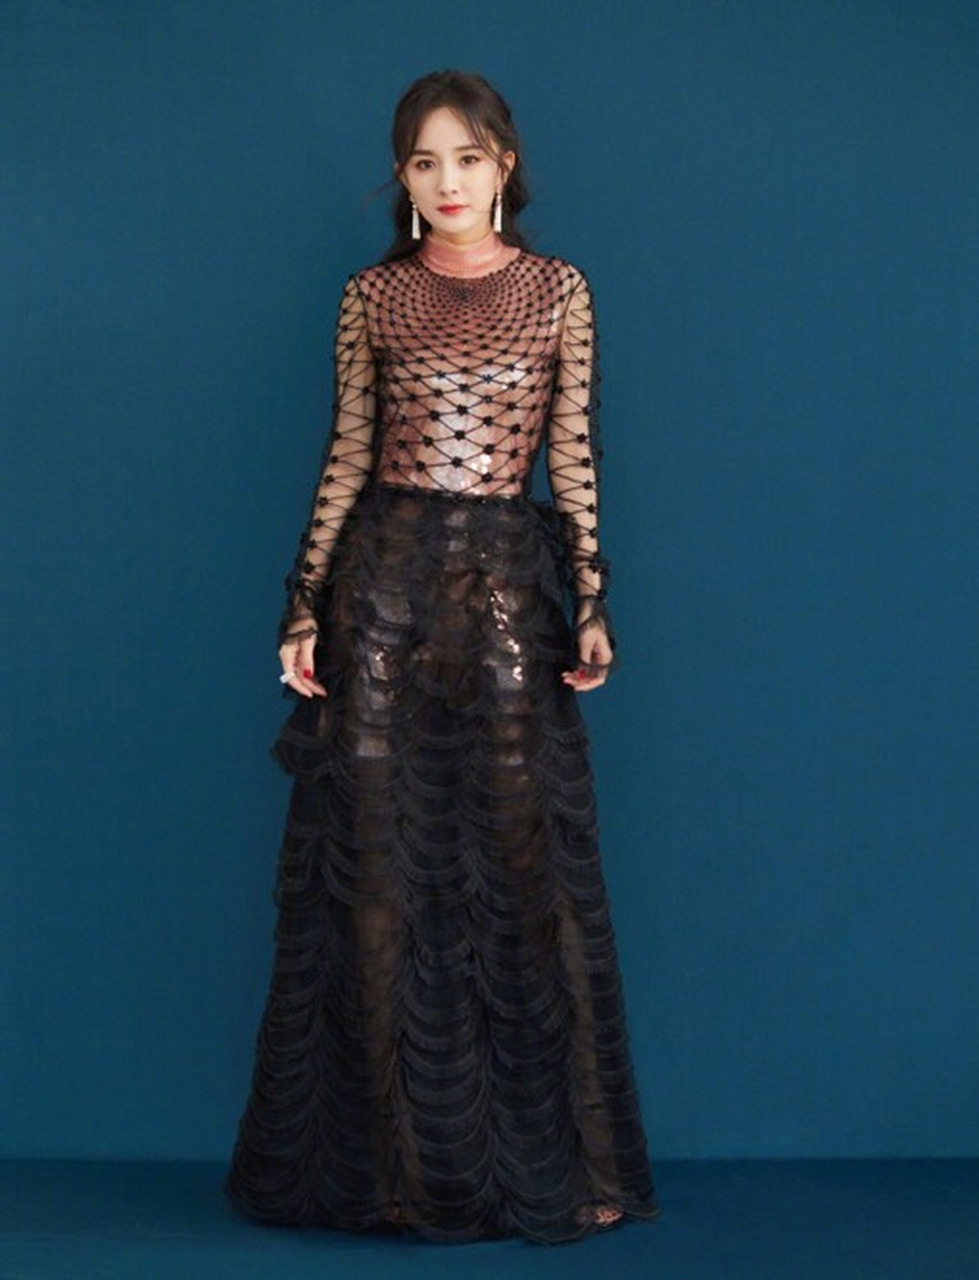 杨幂在2018微博之夜中的造型,身穿一袭黑色透视礼服,透明的亮片隐隐约